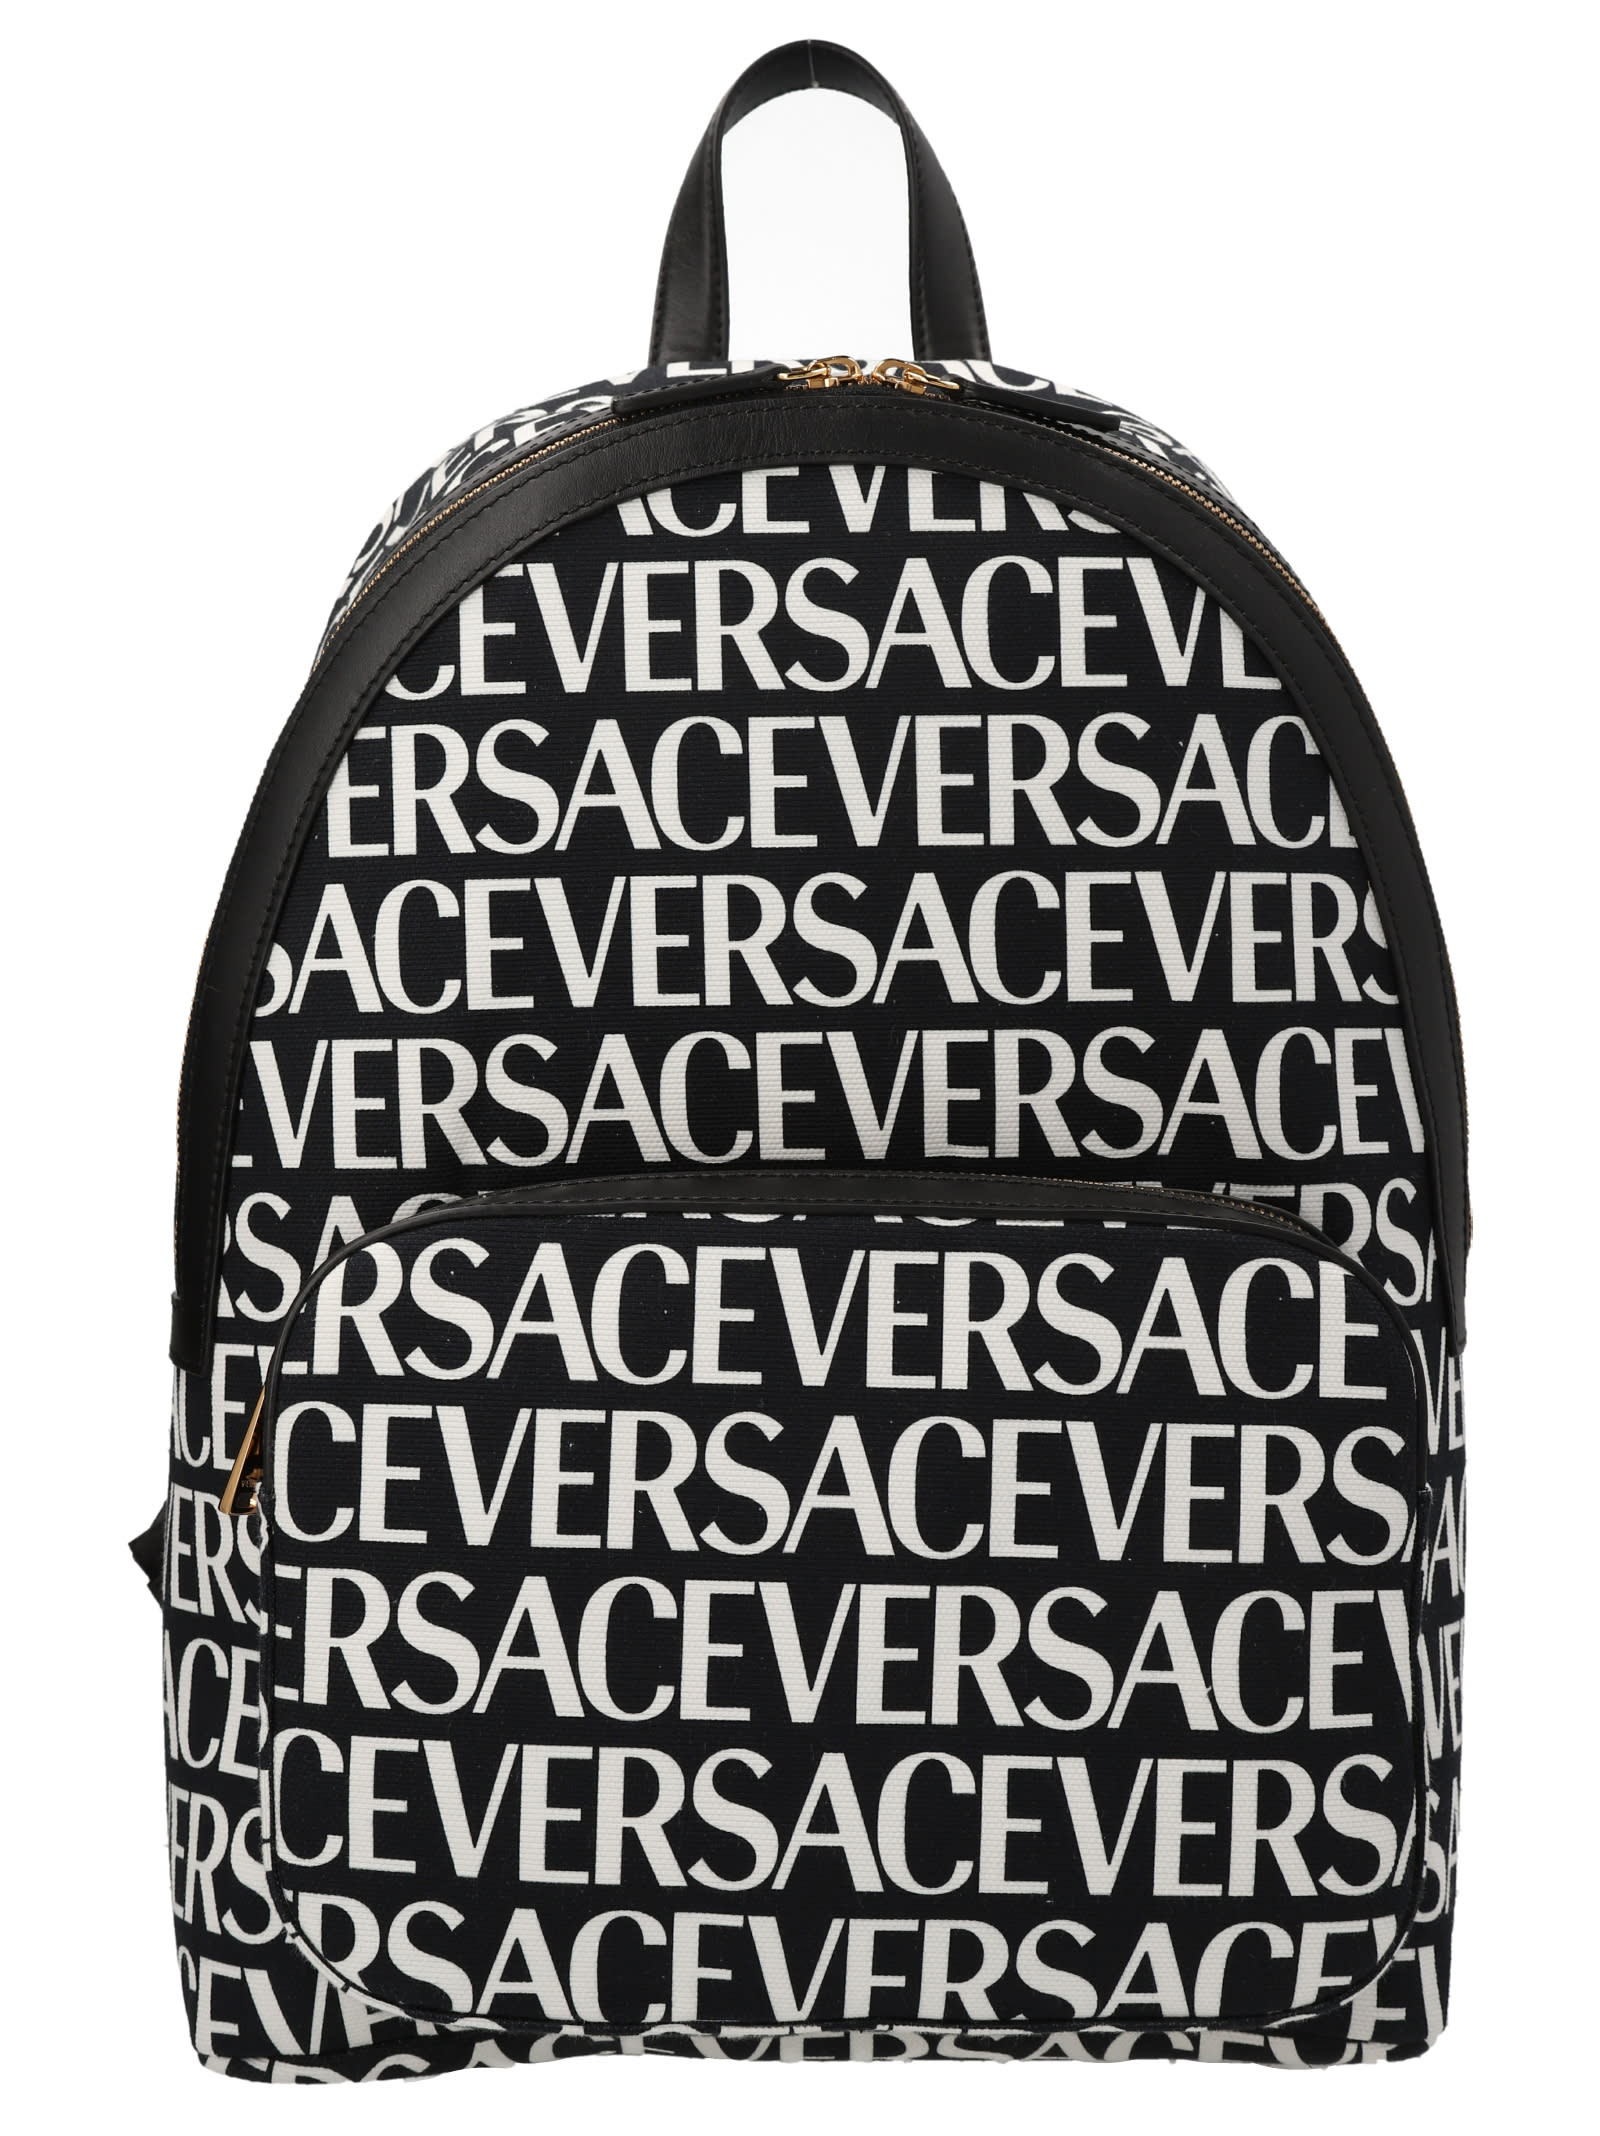 Versace Barocco 660 Print Nylon Medusa Backpack in Gray for Men